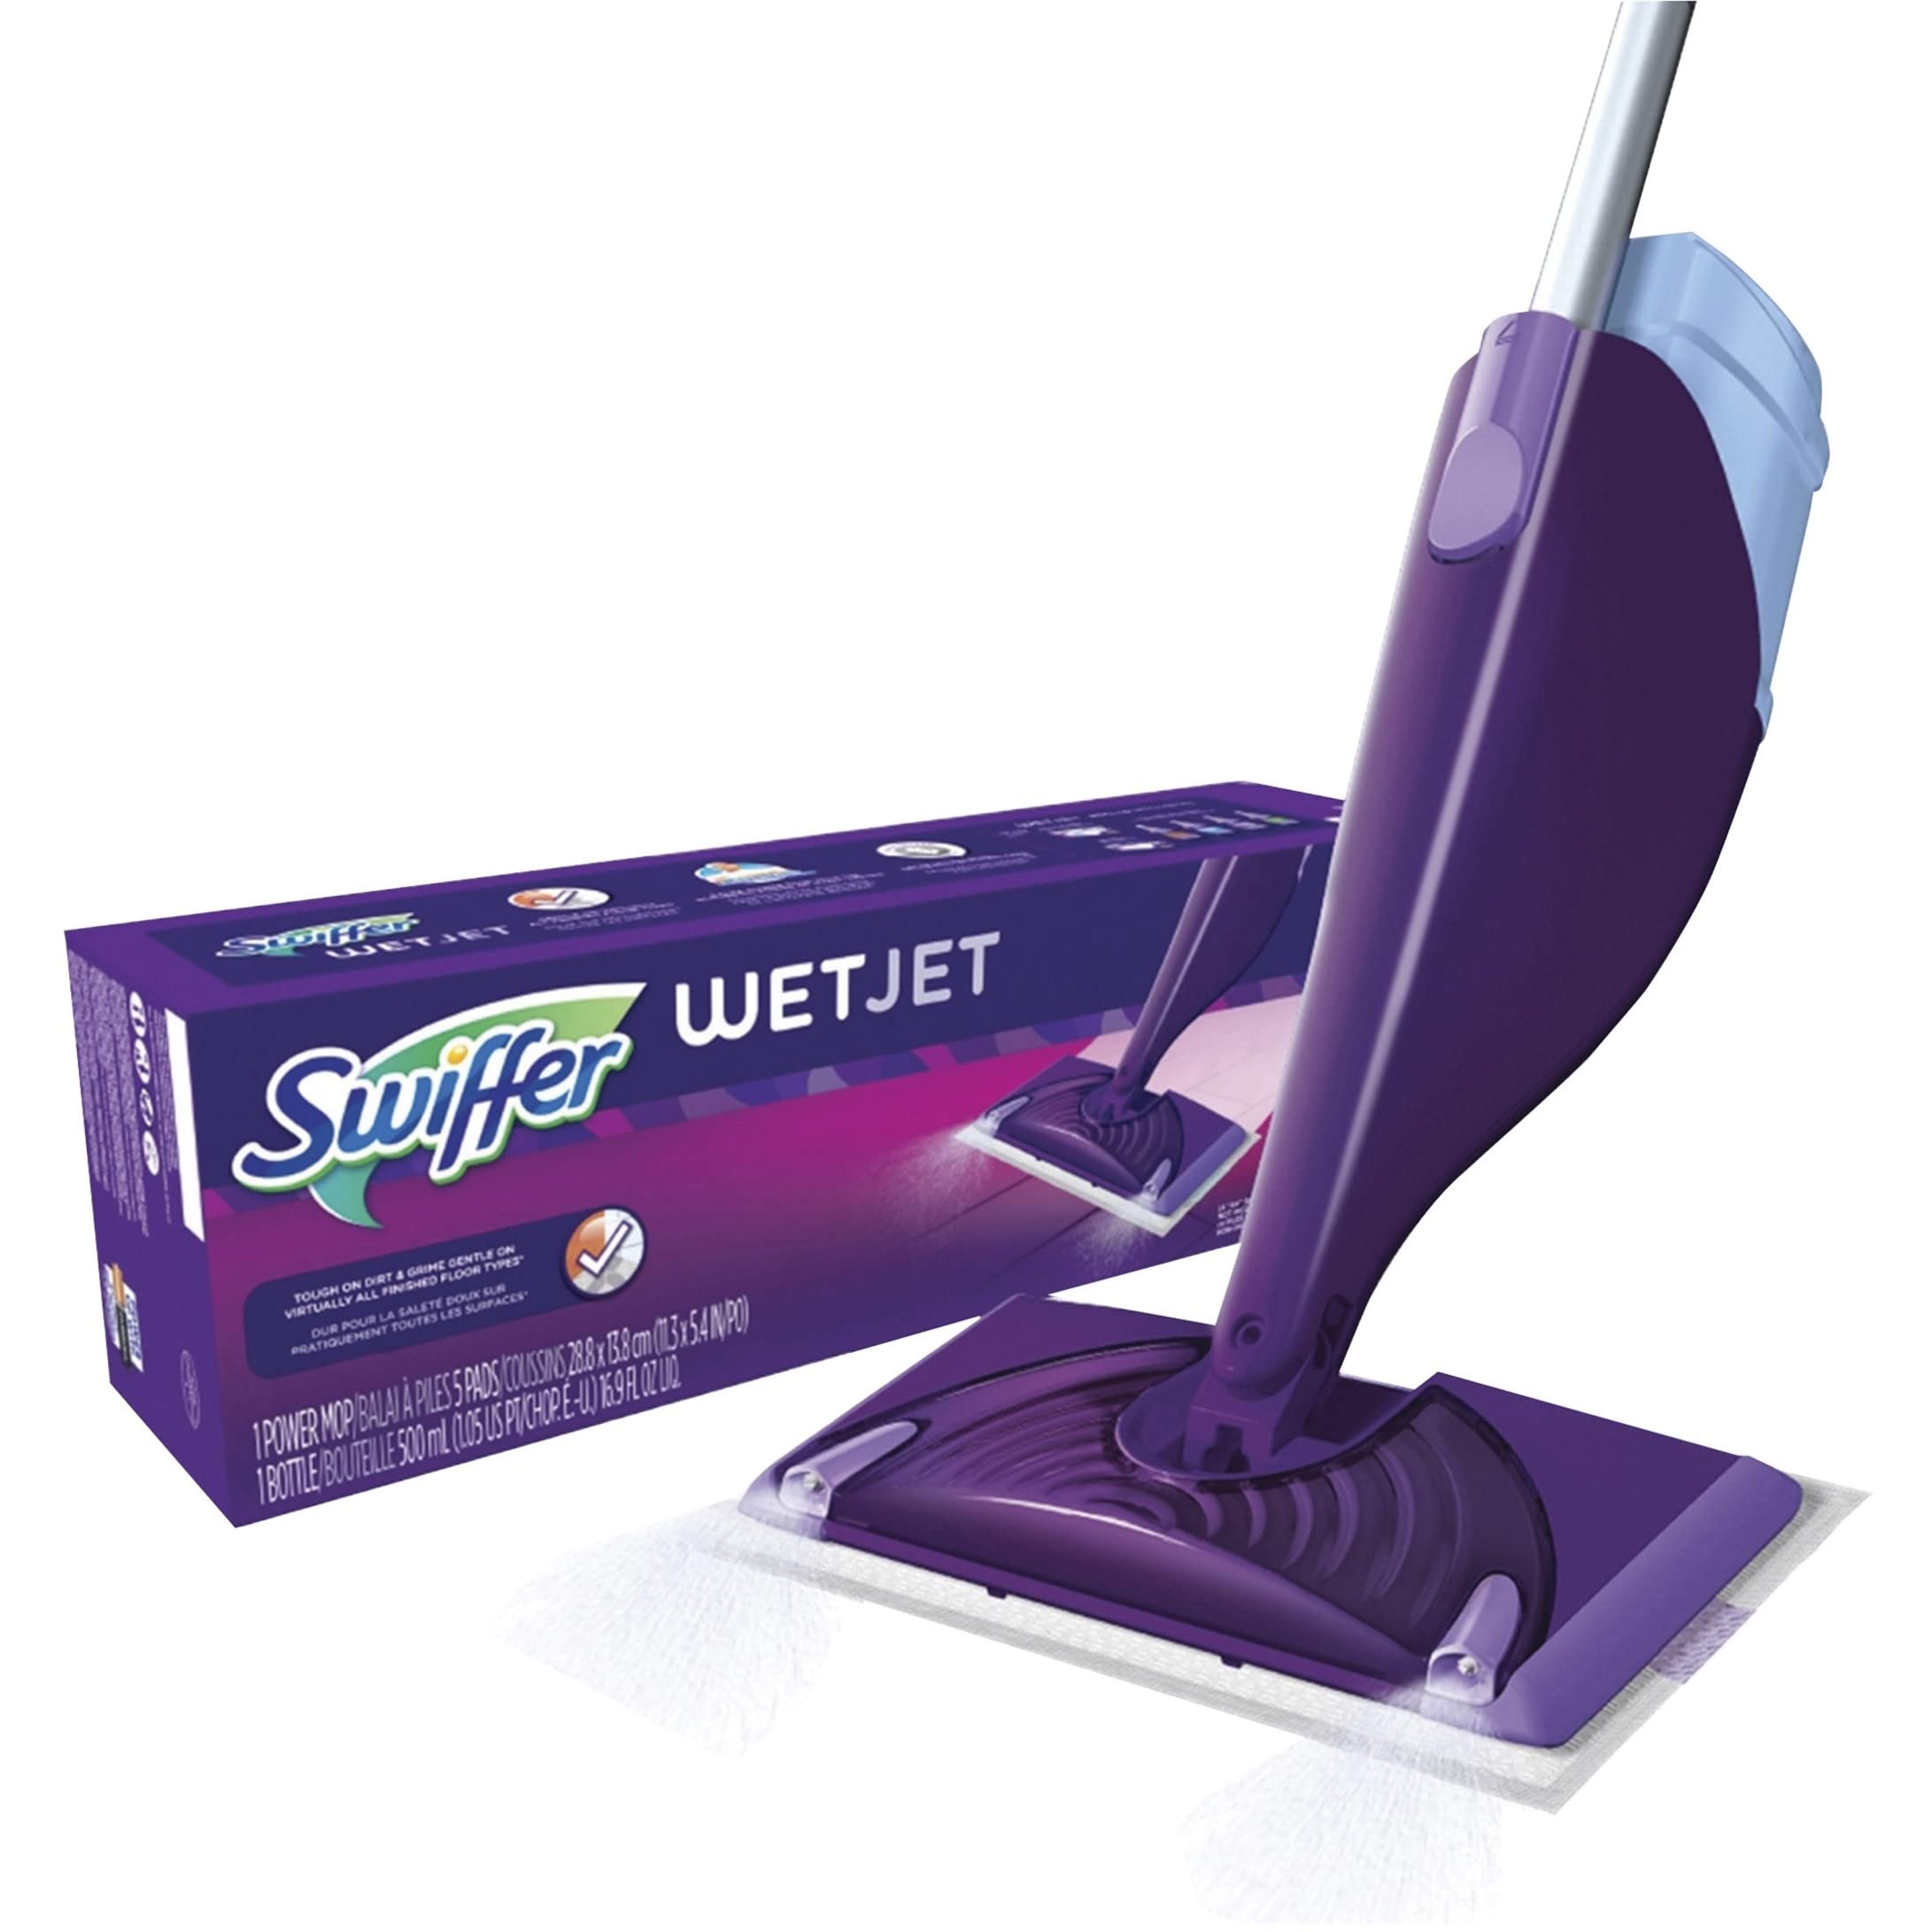  Swiffer WetJet Starter Kit, Includes: 1 Power Mop, 5